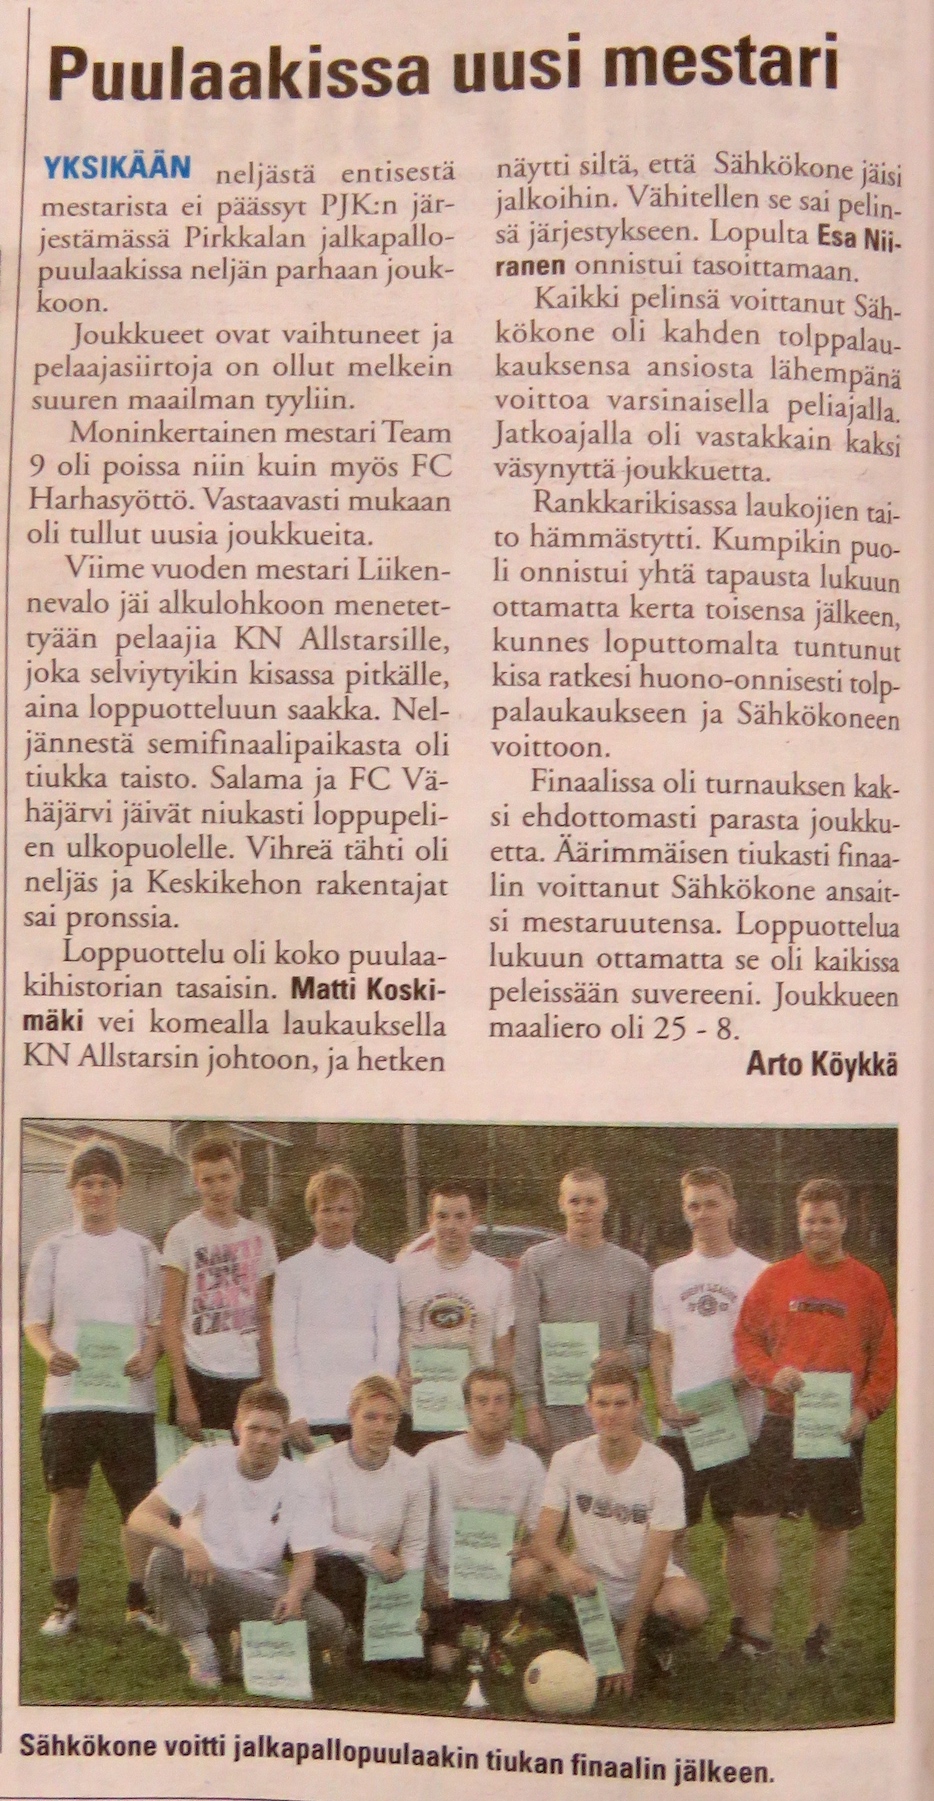 Turnausraportti Pirkkalaisessa 28.09. 2011